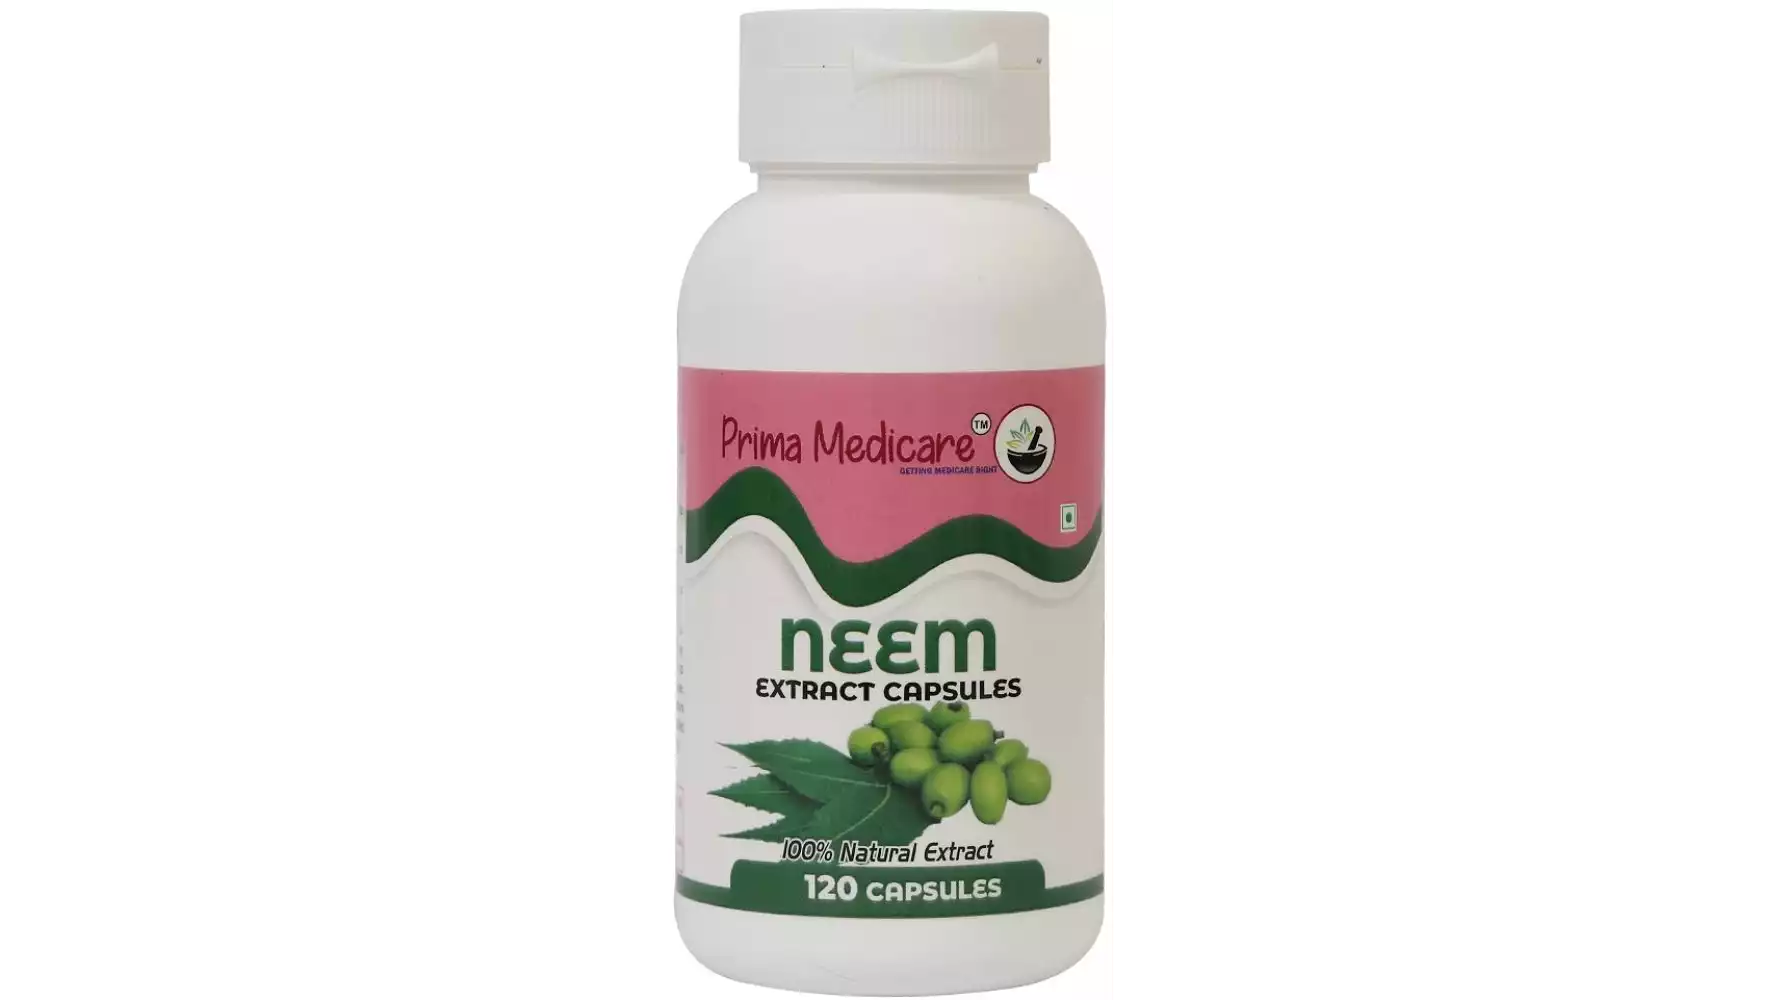 Prima Medicare Neem Extract Capsules (120caps)